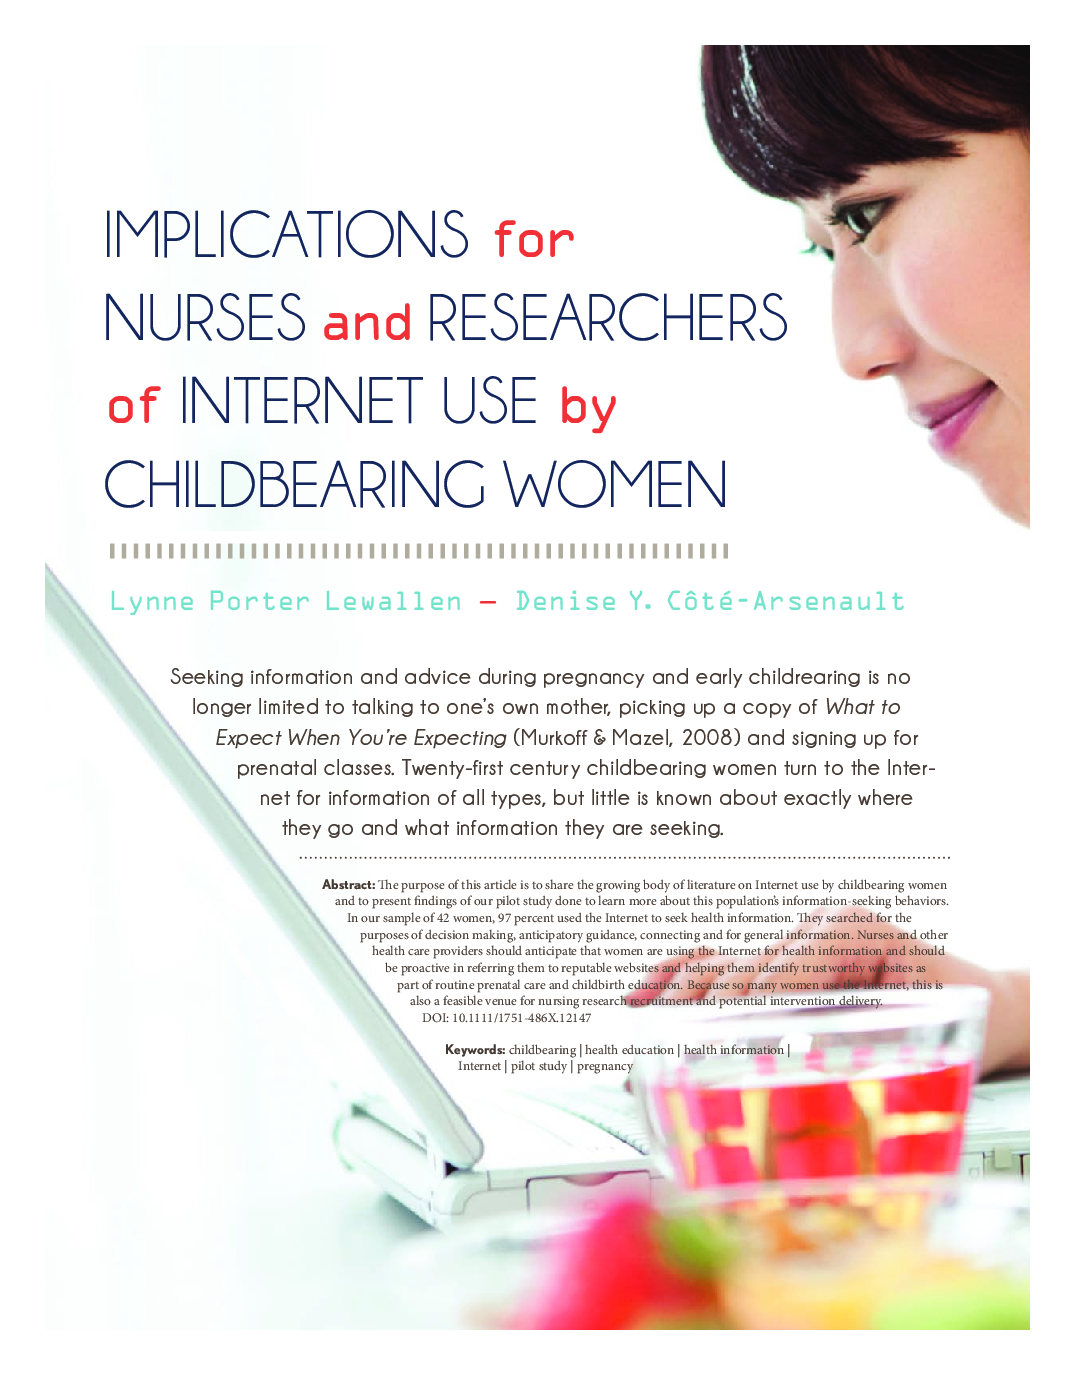 پیامدهای پرستاران و محققان استفاده از اینترنت توسط زنان بارور 